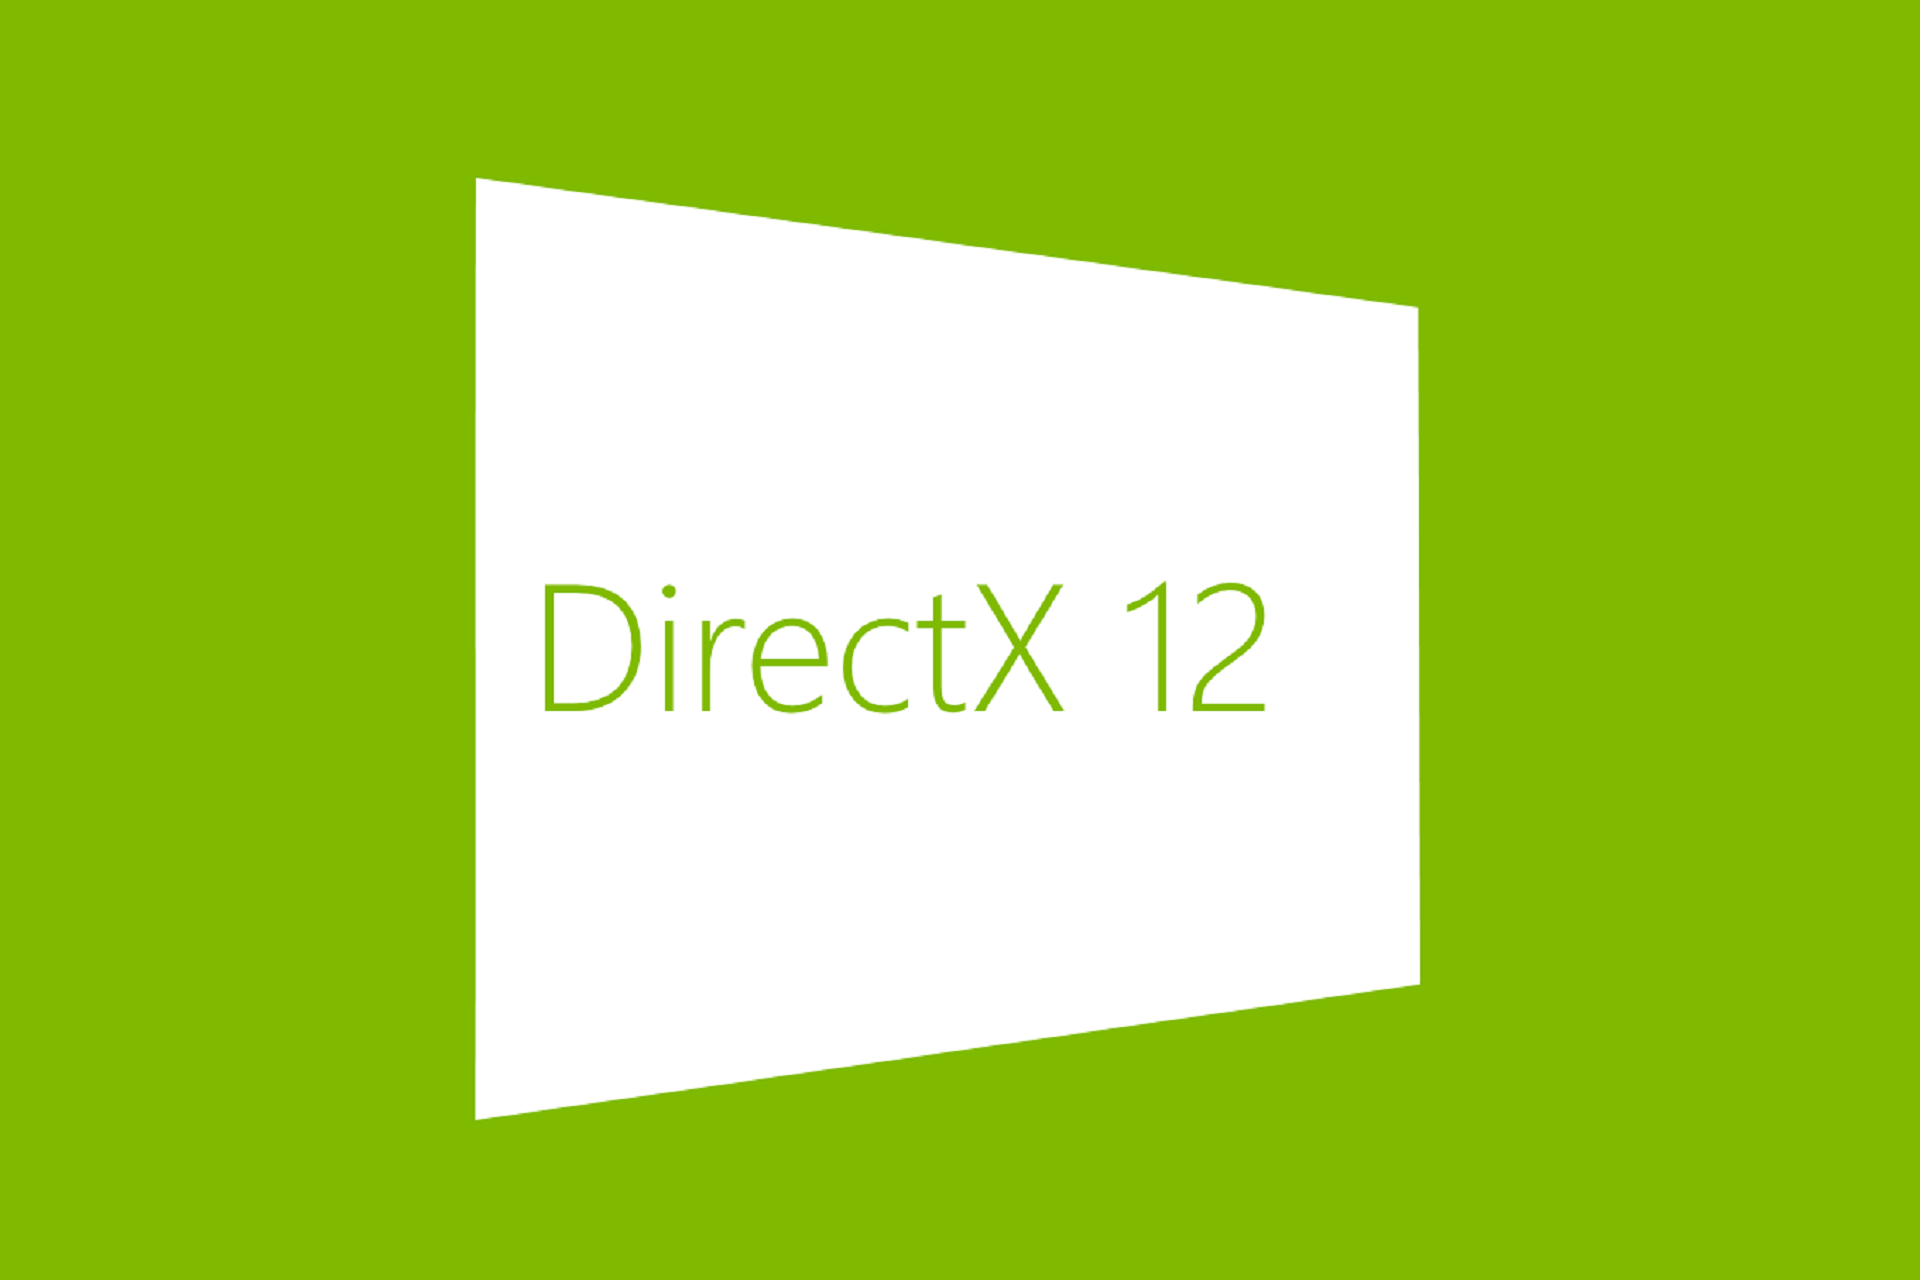 amd directx 12 download windows 10 64 bit